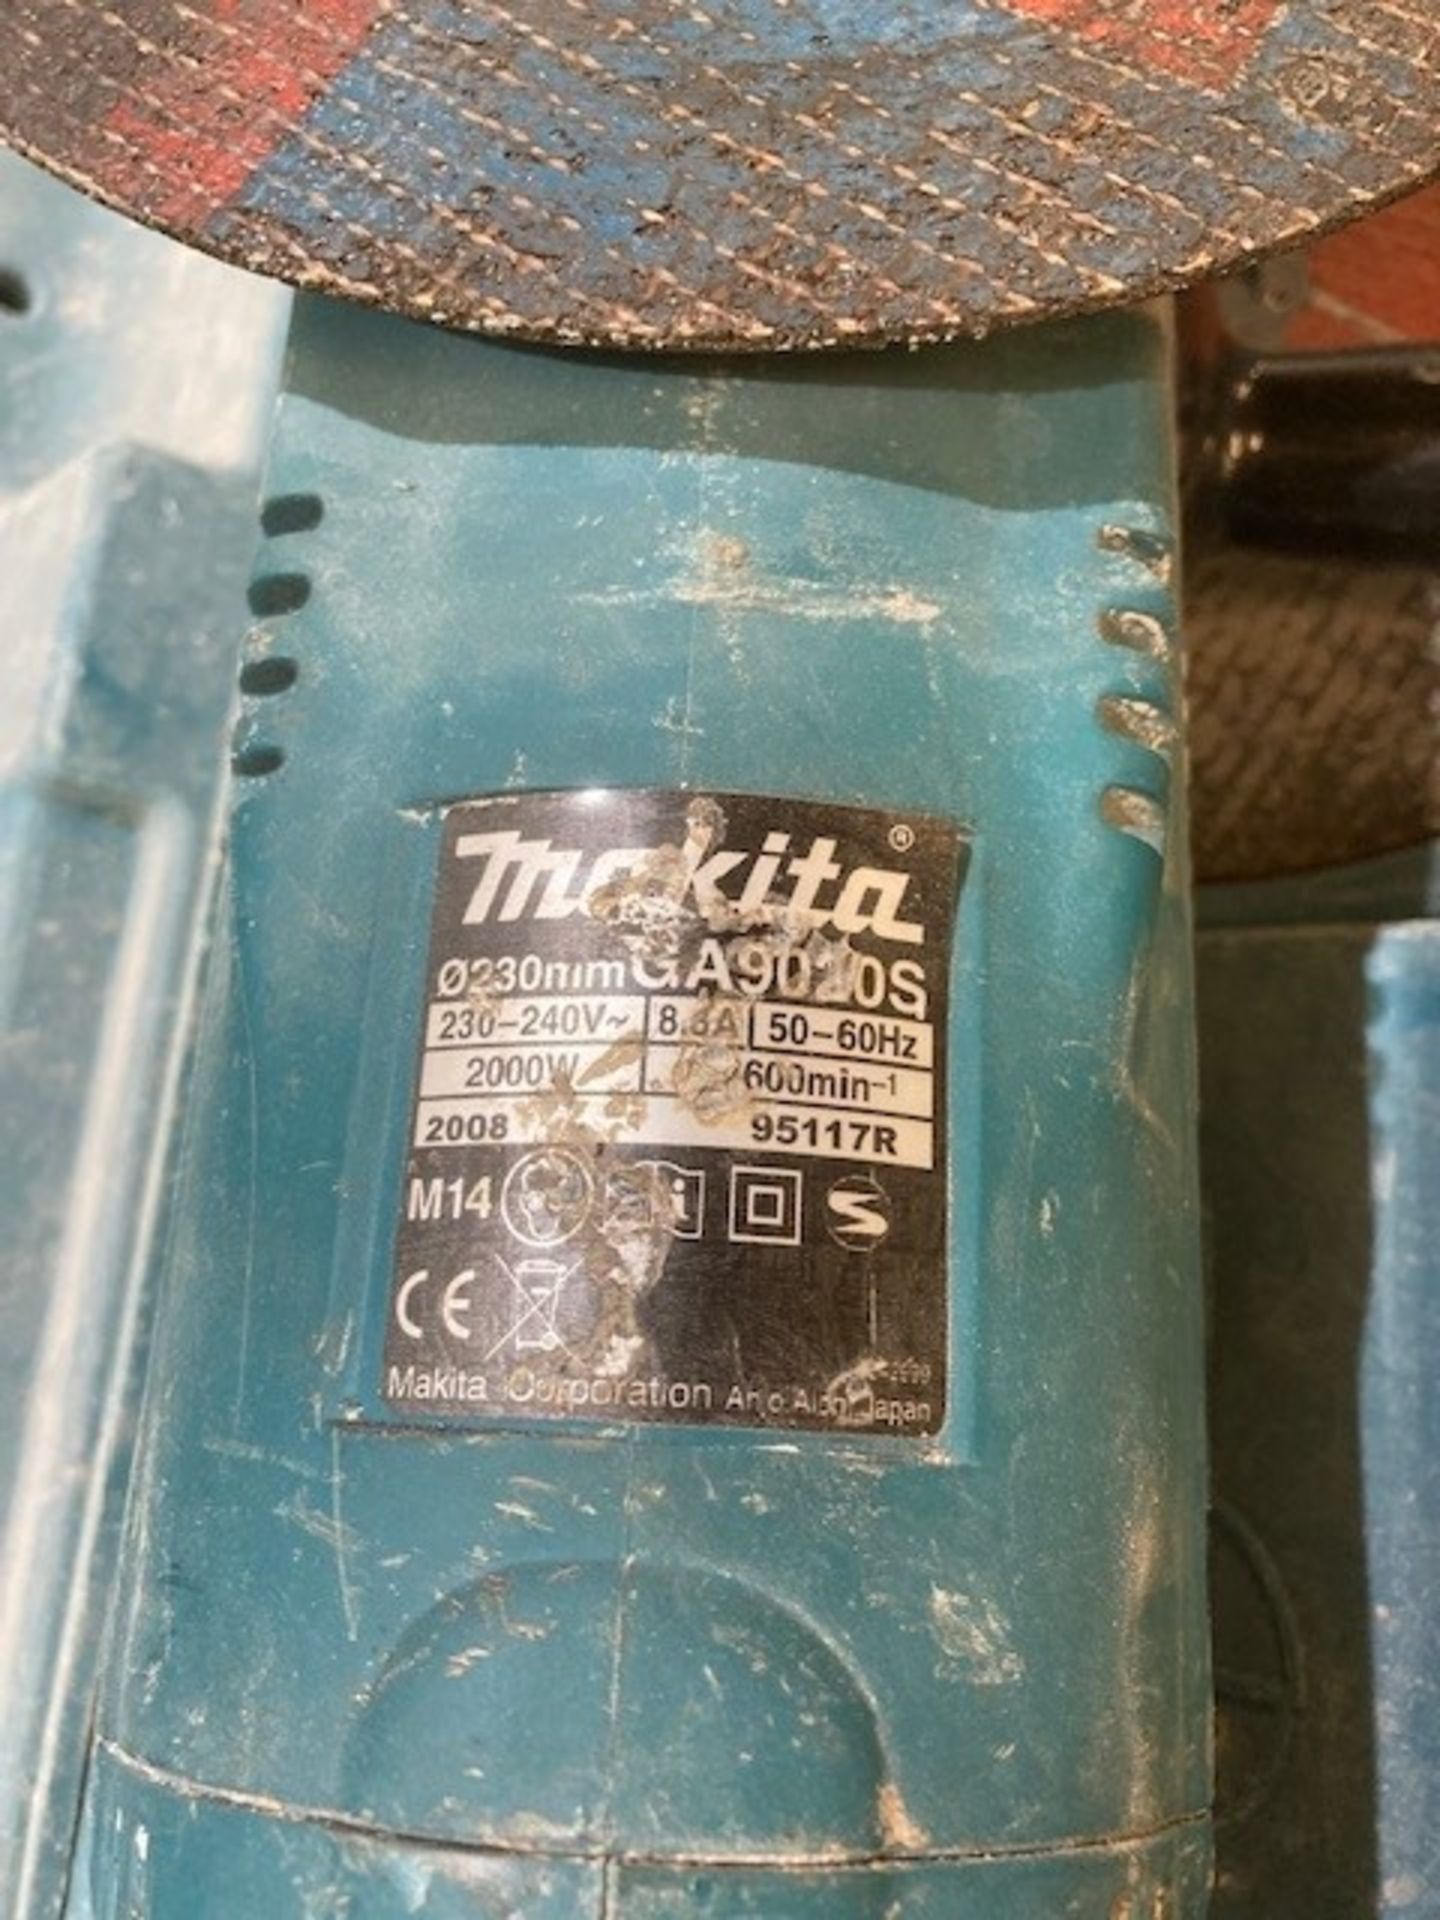 Makita GA9020S 230mm Angle Grinder - Image 3 of 3